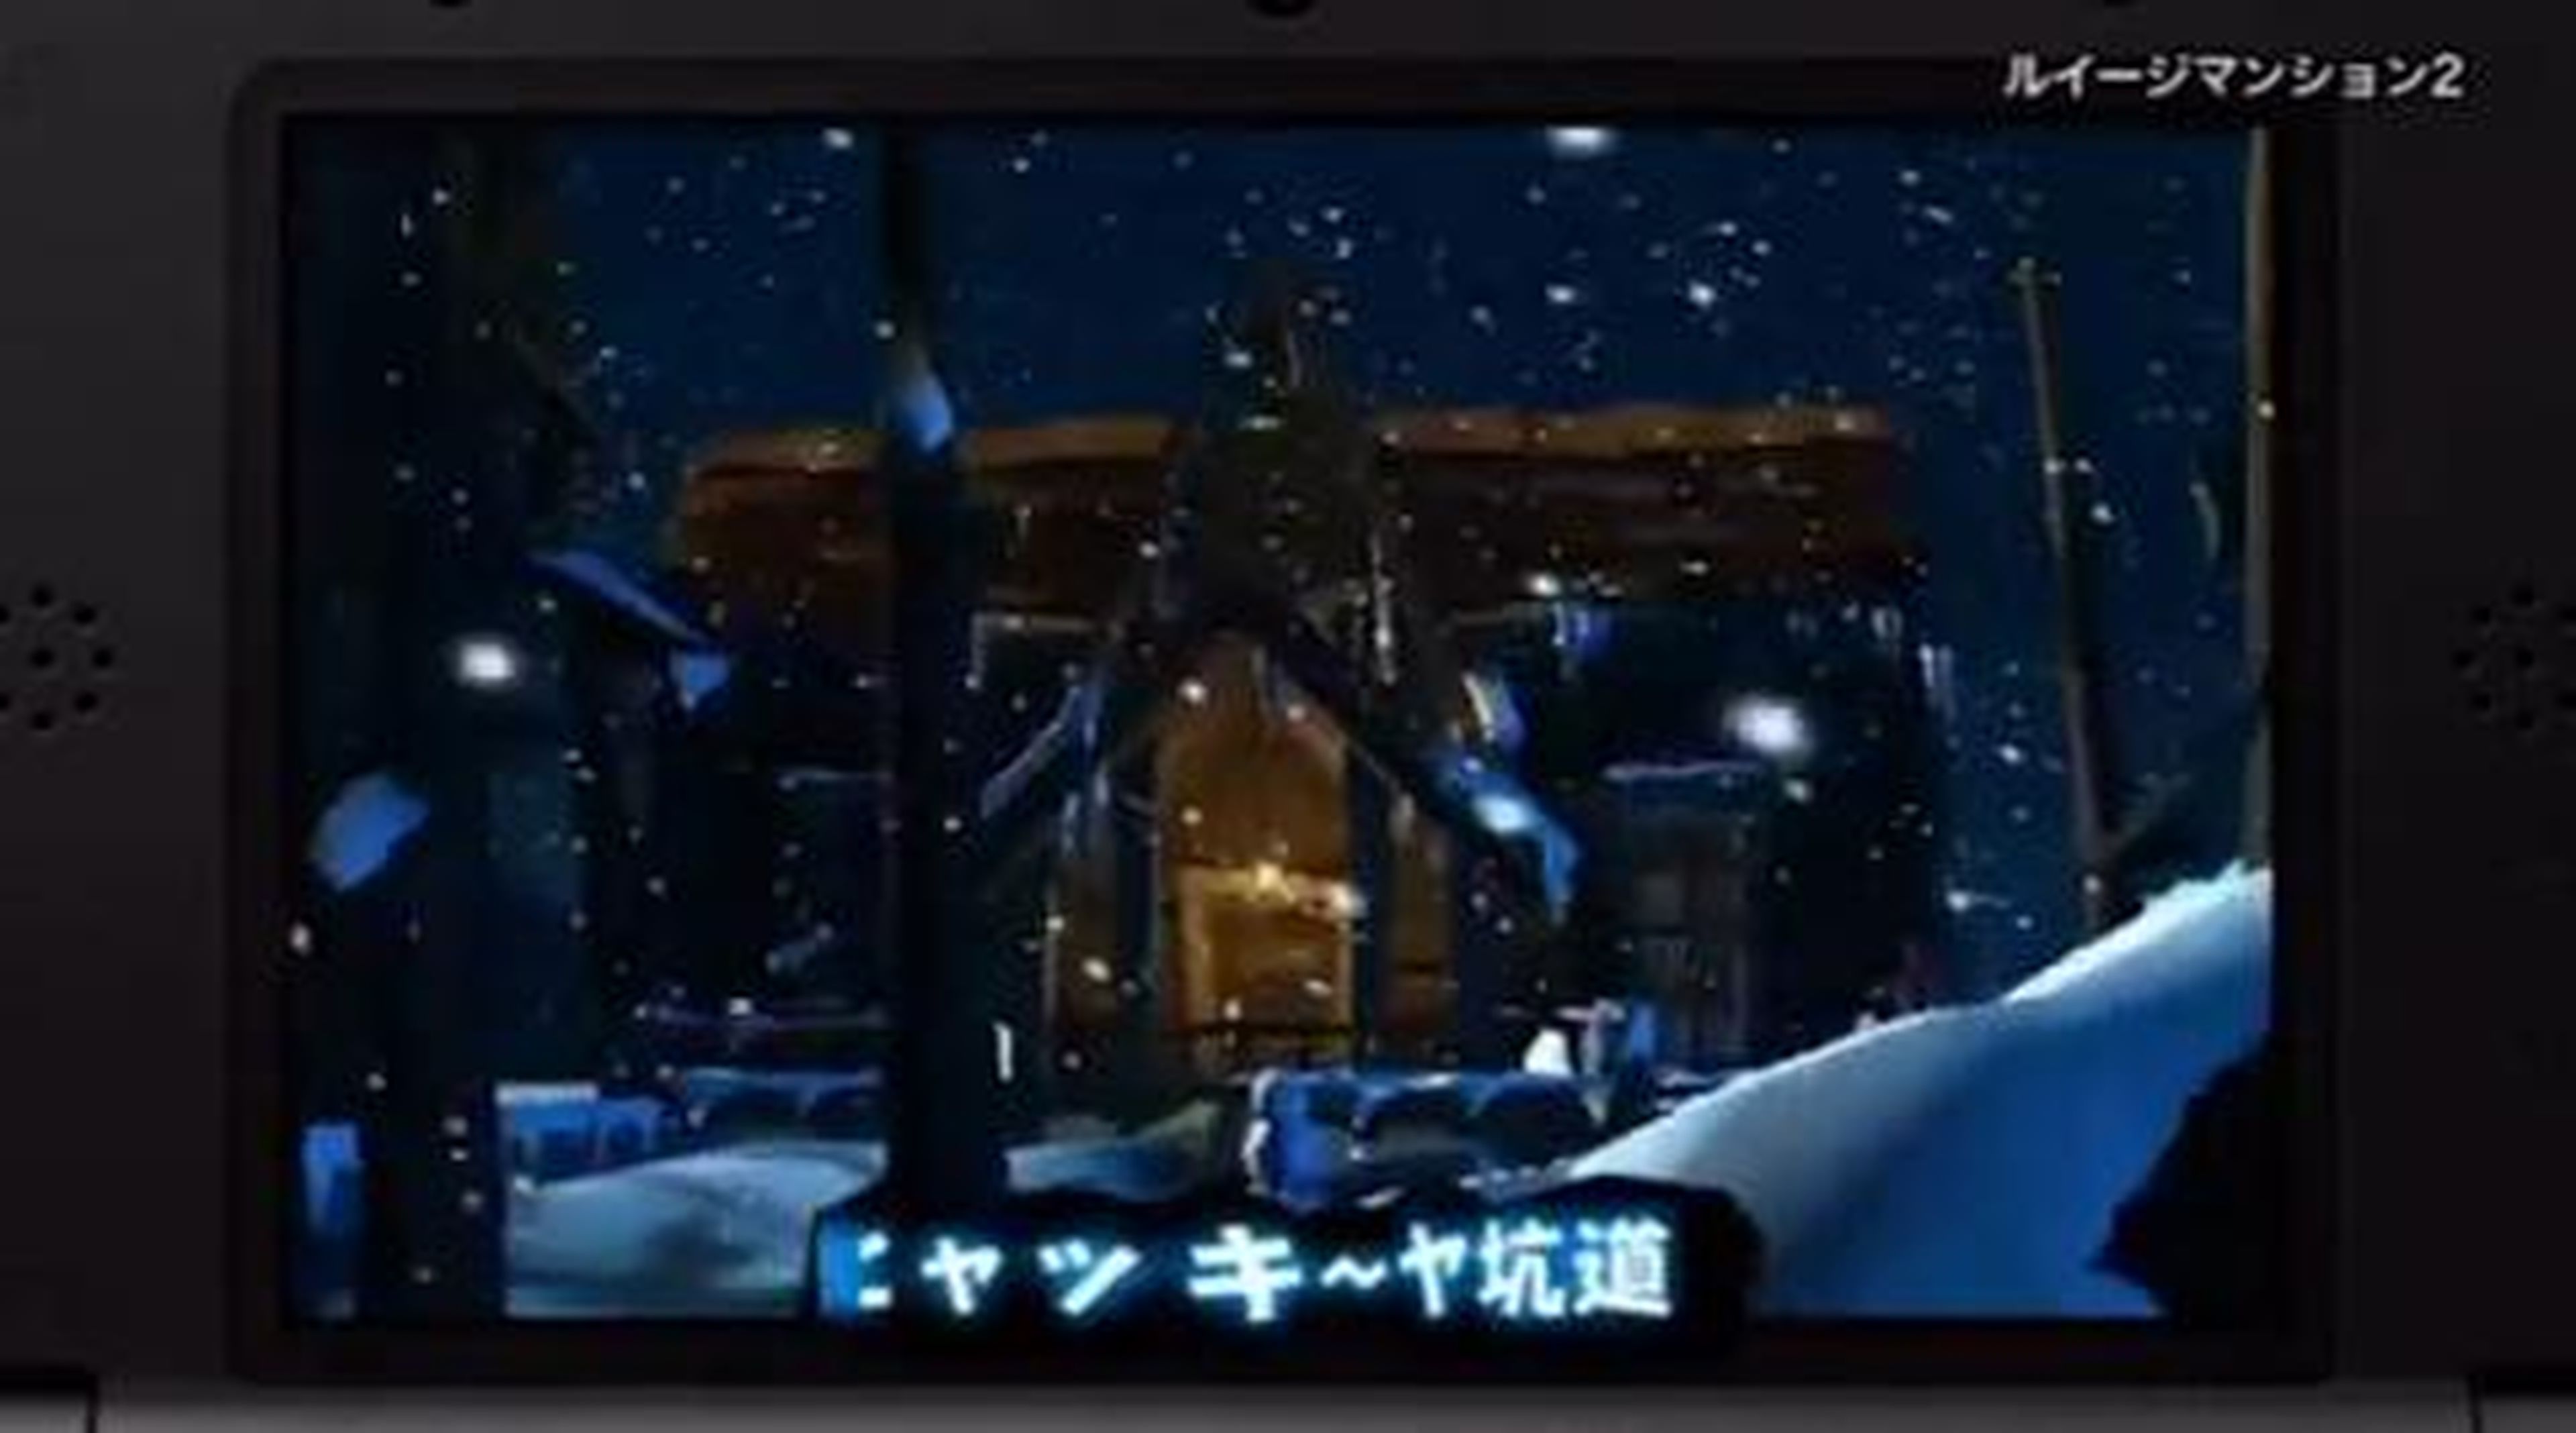 Tráiler gameplay de Luigi's Mansion 2 en Hobbyconsolas.com